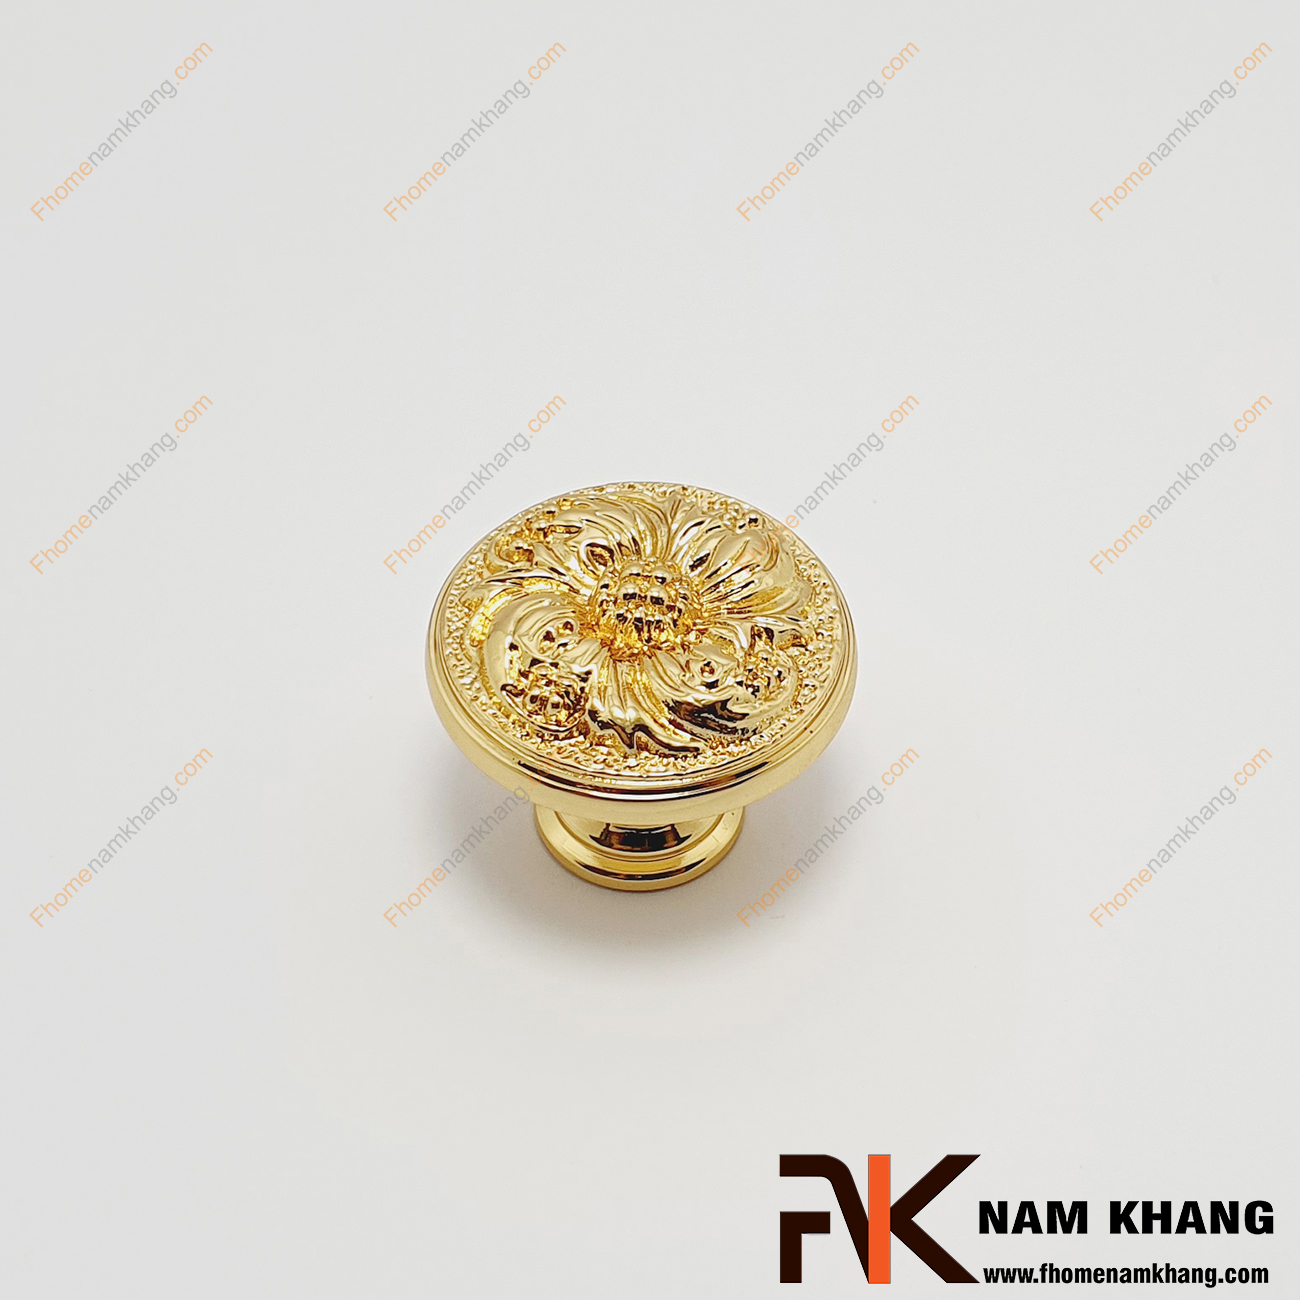 Núm cửa tủ cao cấp bằng đồng NK149A-DV, dáng núm tròn trơn màu đồng vàng xước ấn tượng, lắp đặt bằng vít khoan âm cực kỳ an toàn khi sử dụng.